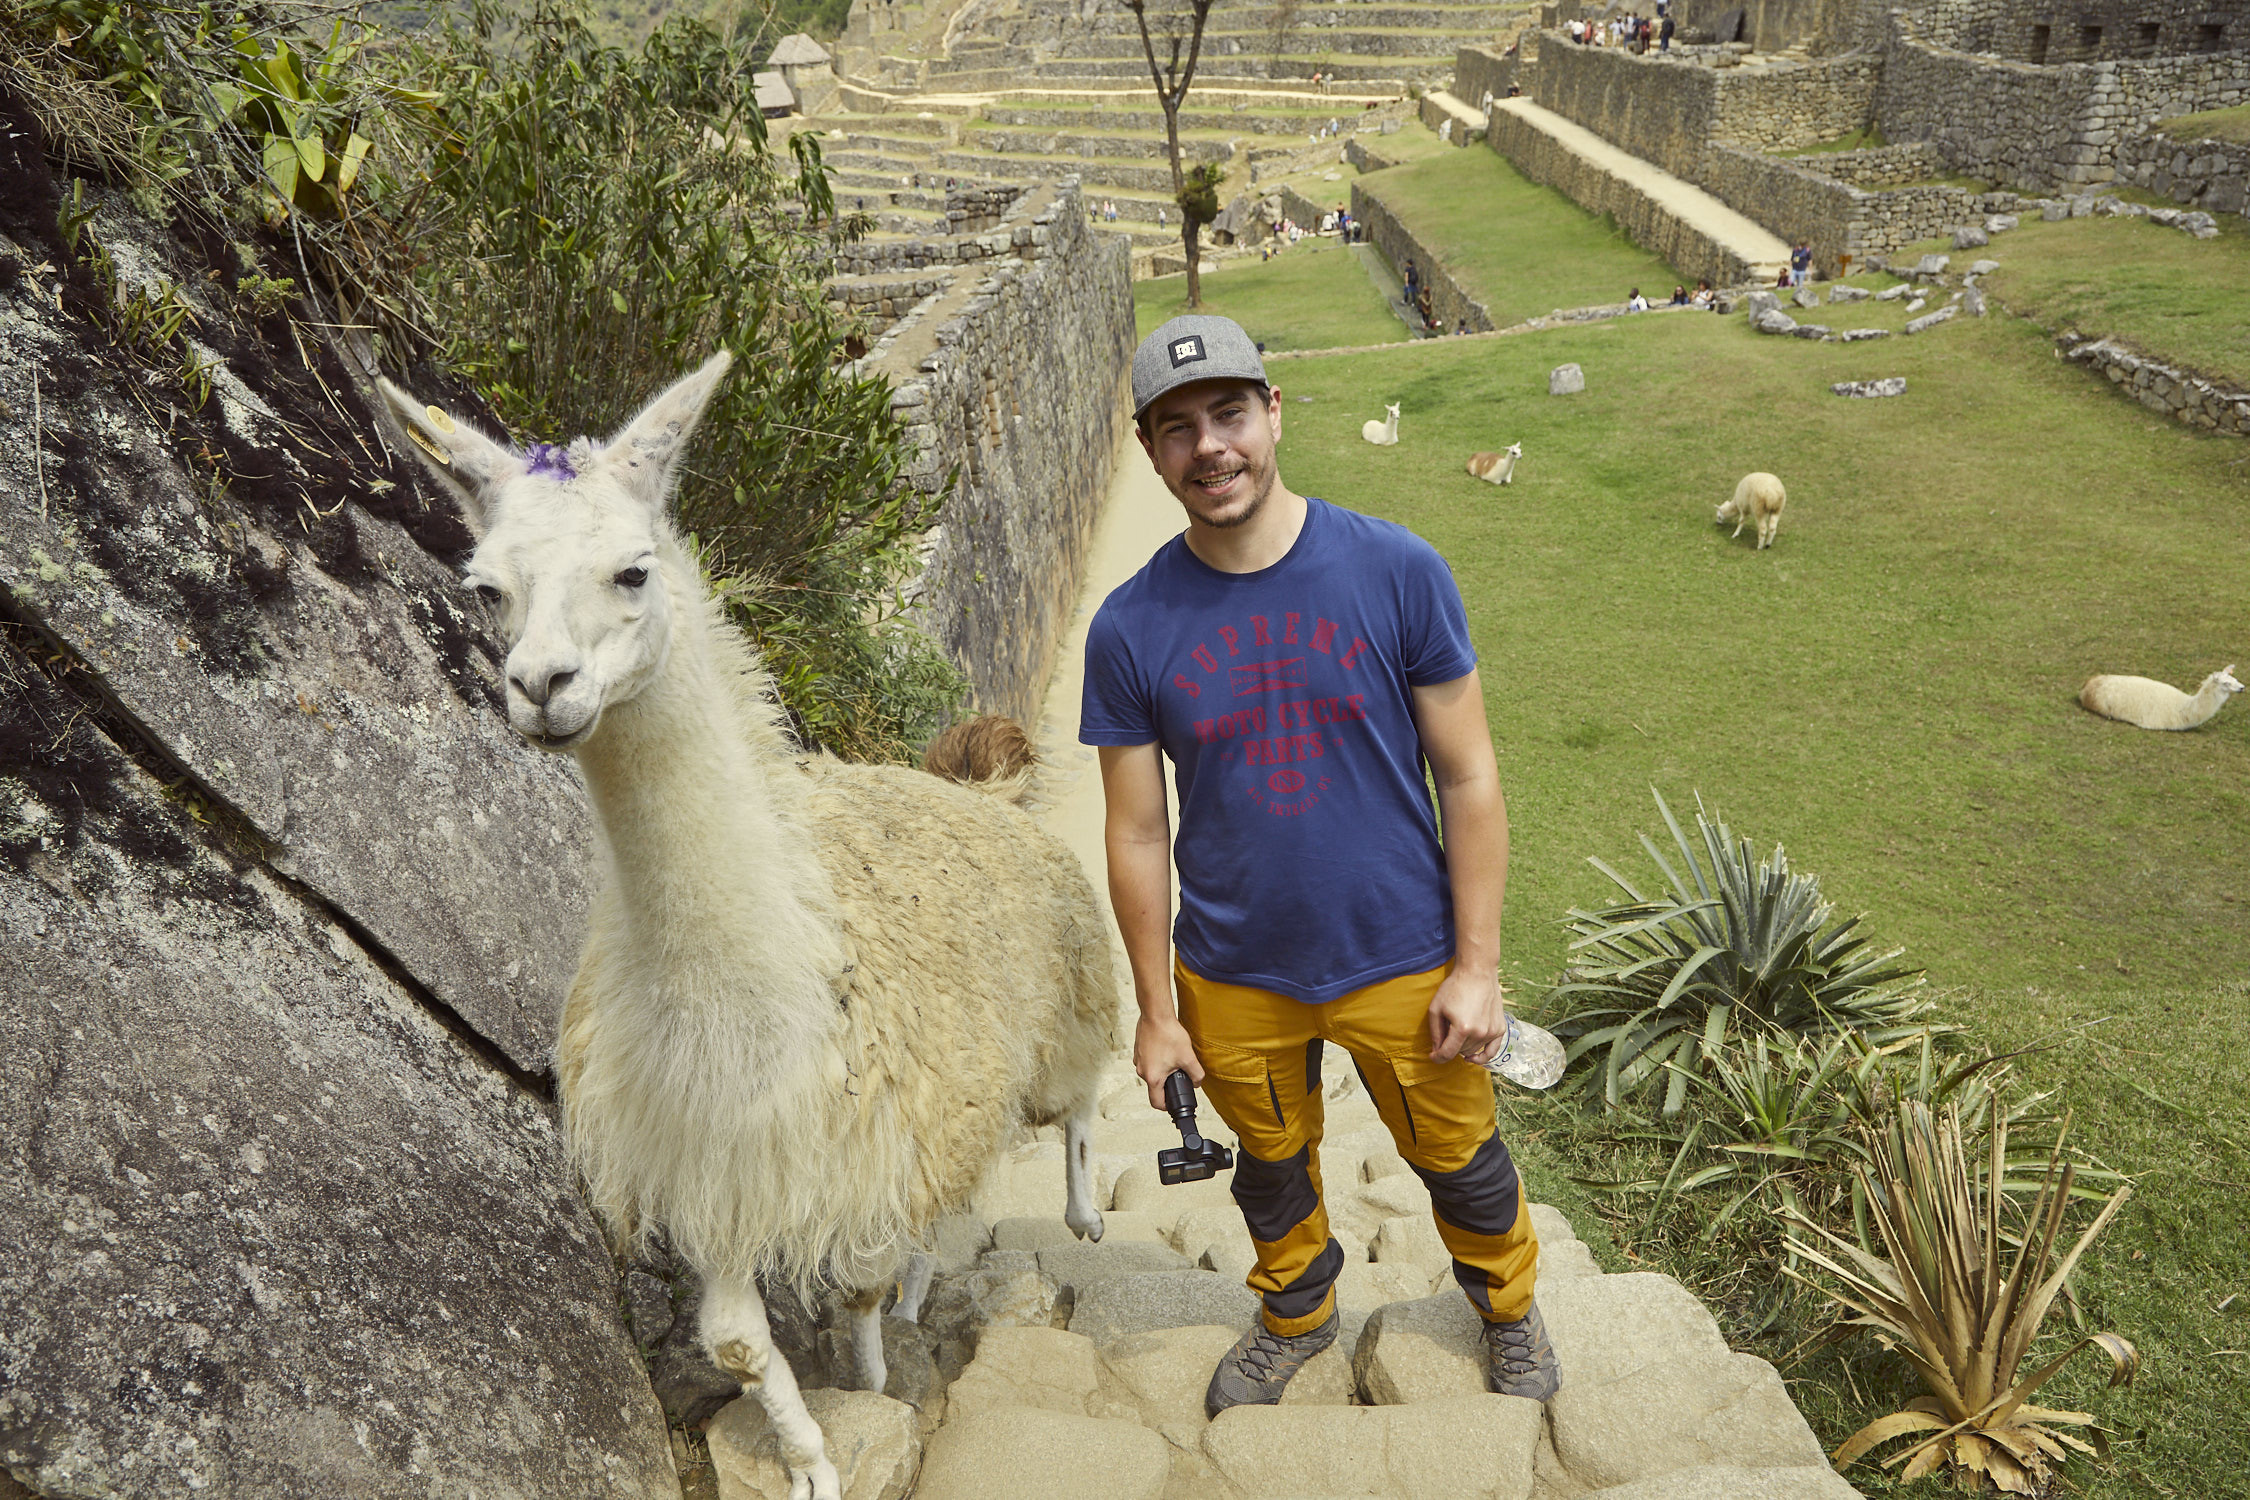 Foto Nummer 2 von unseren 6 lustigen Tierfotos, Eine witzige Begegnung mit einem Lama in Peru. Als Ronnie sich gerade umgedreht hatte; lief dieses Lama direkt hinter ihm auf die Treppe. So kam er noch zu einem ganz natürlichen Foto mit einem Lama in Machu Picchu während unseres Peru Urlaubes